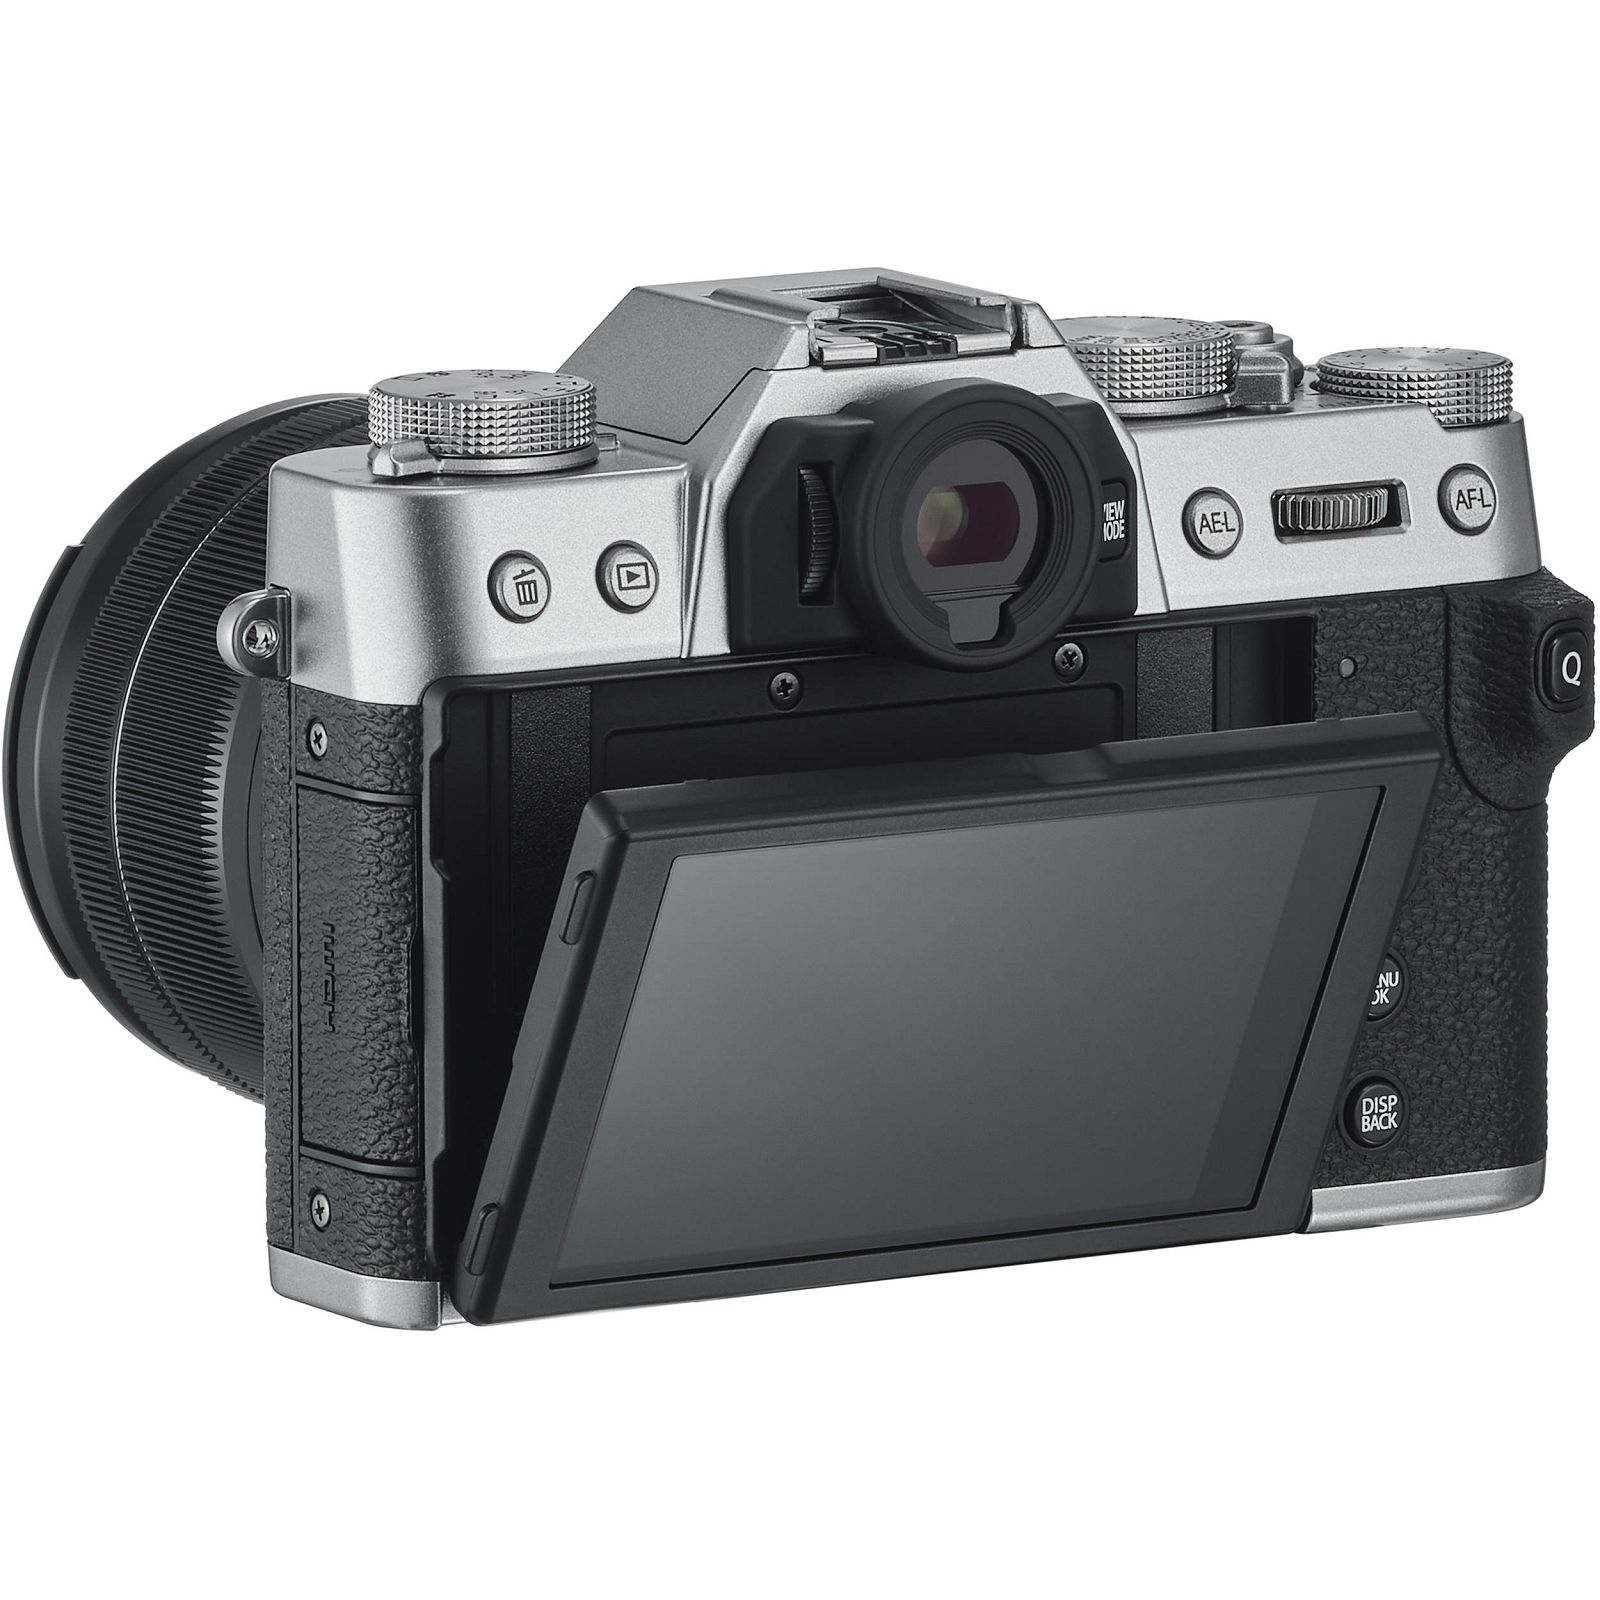 Fujifilm X-T30 + XF 18-55 f2.8-4 R LM OIS Silver srebreni digitalni mirrorless fotoaparat s objektivom 18-55mm Fuji (16619841)